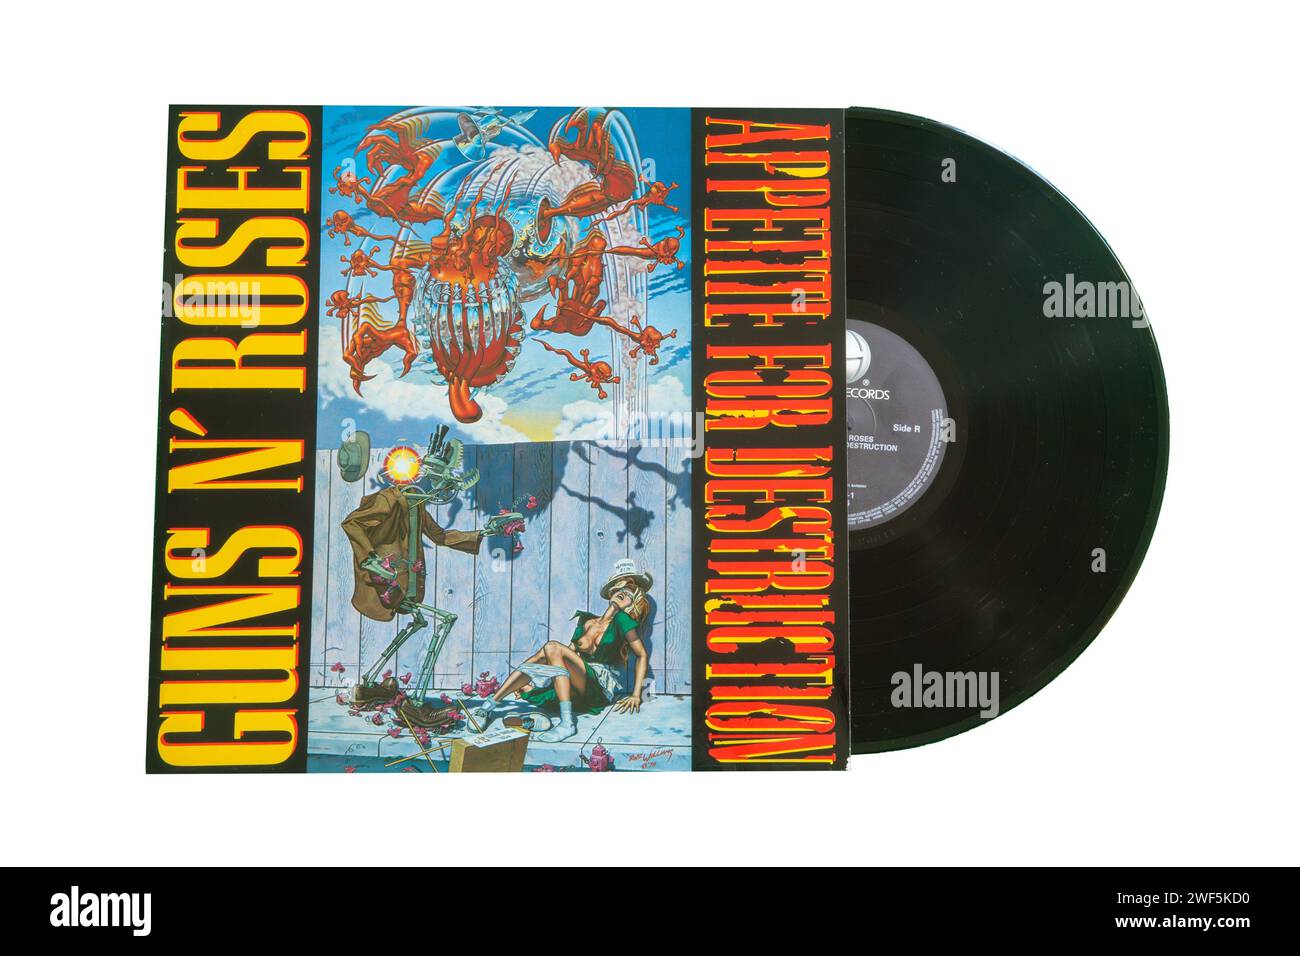 Copertina dell'album di debutto APPETITE FOR DESTRUCTION del gruppo hard rock statunitense GUNS N' ROSES. L'album include brani leggendari come Welcome to the J Foto Stock